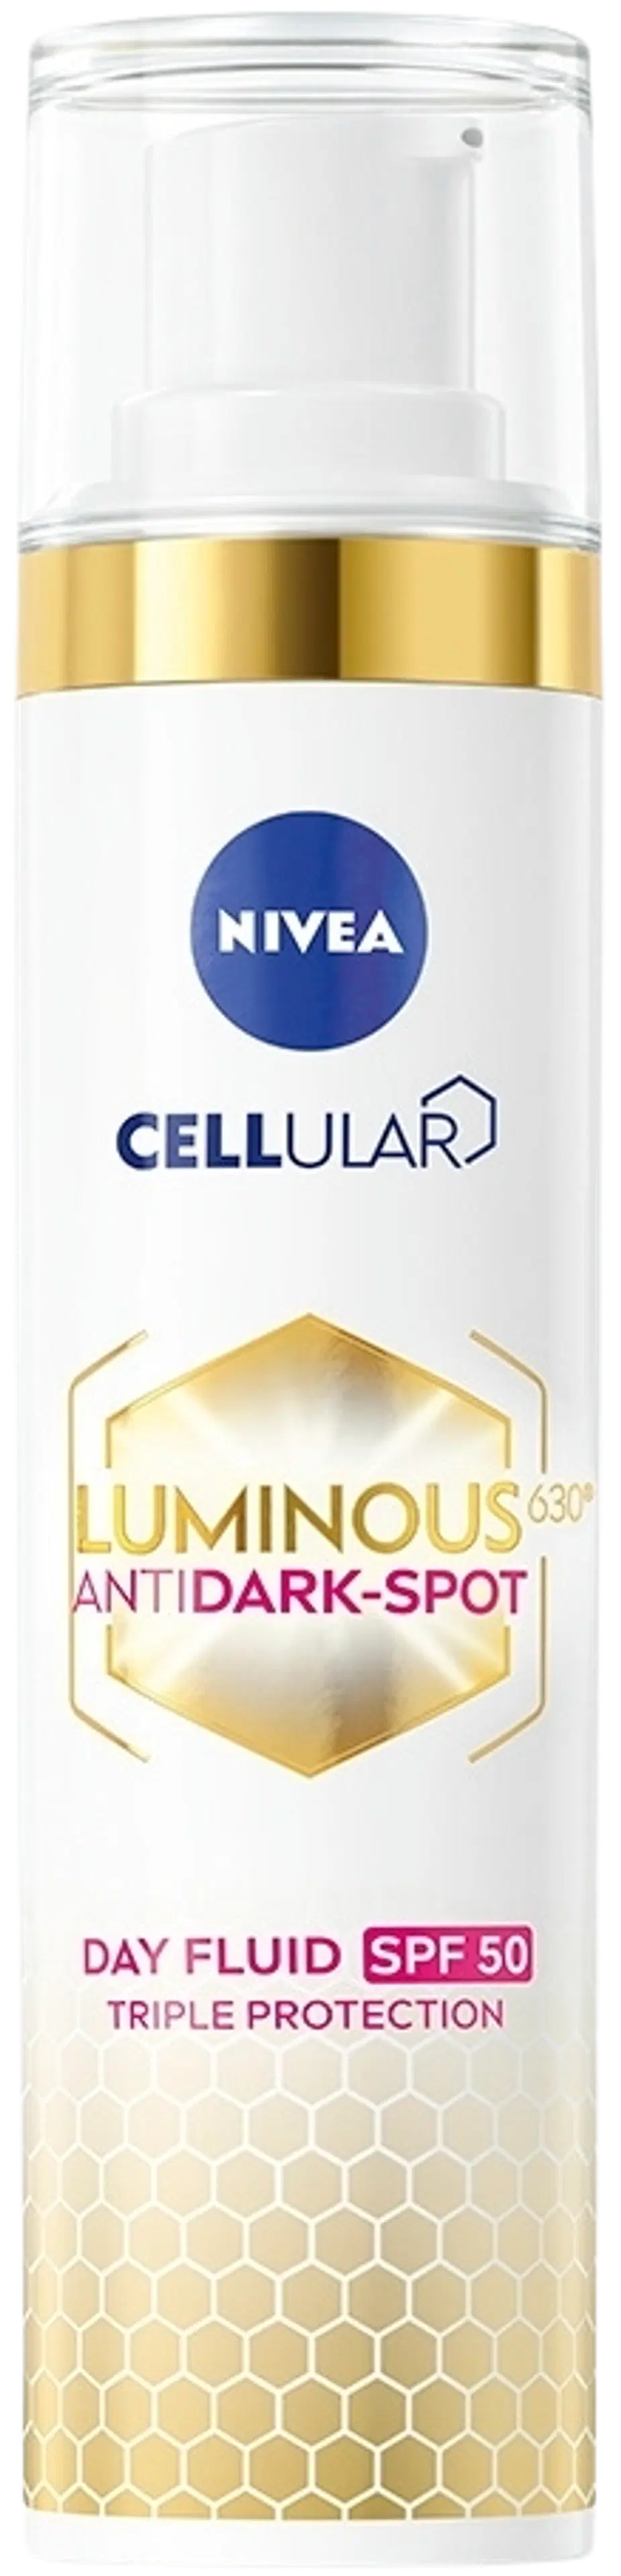 NIVEA 40ml Cellular Luminous630 Anti Dark-Spot Day Fluid sk 50 -päivävoide